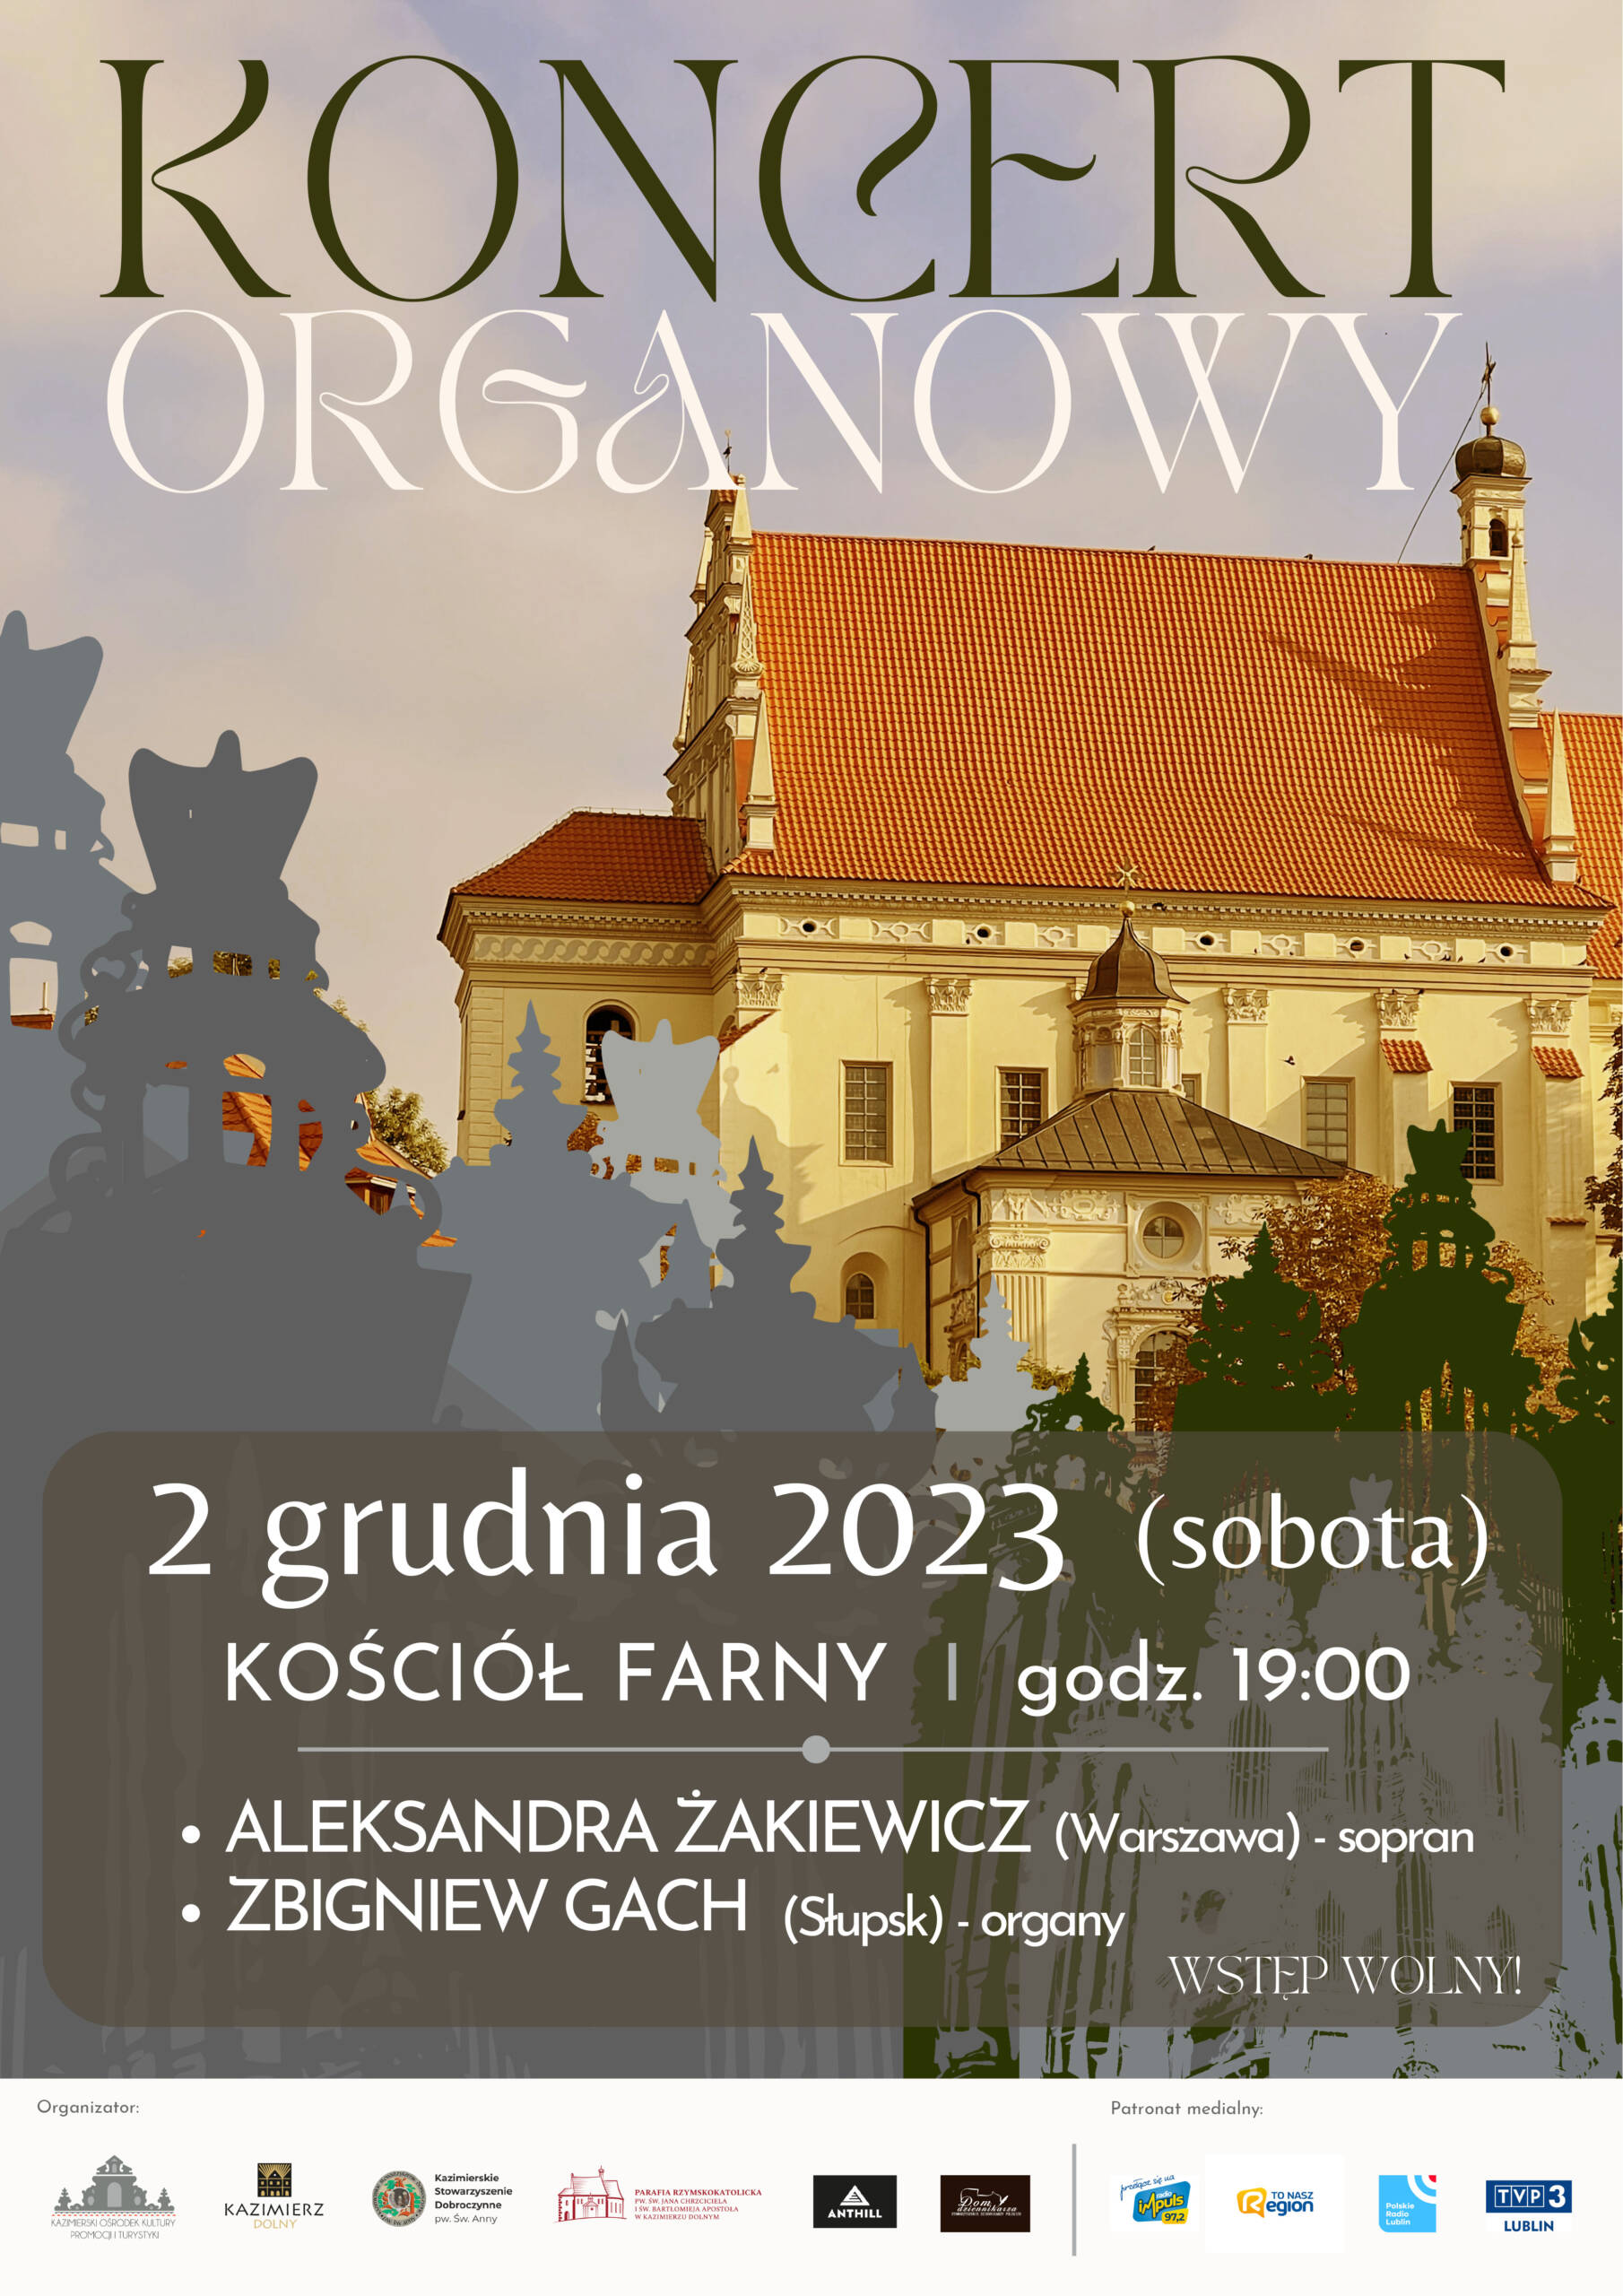 Koncert Organowy 2 grudnia2023 scaled